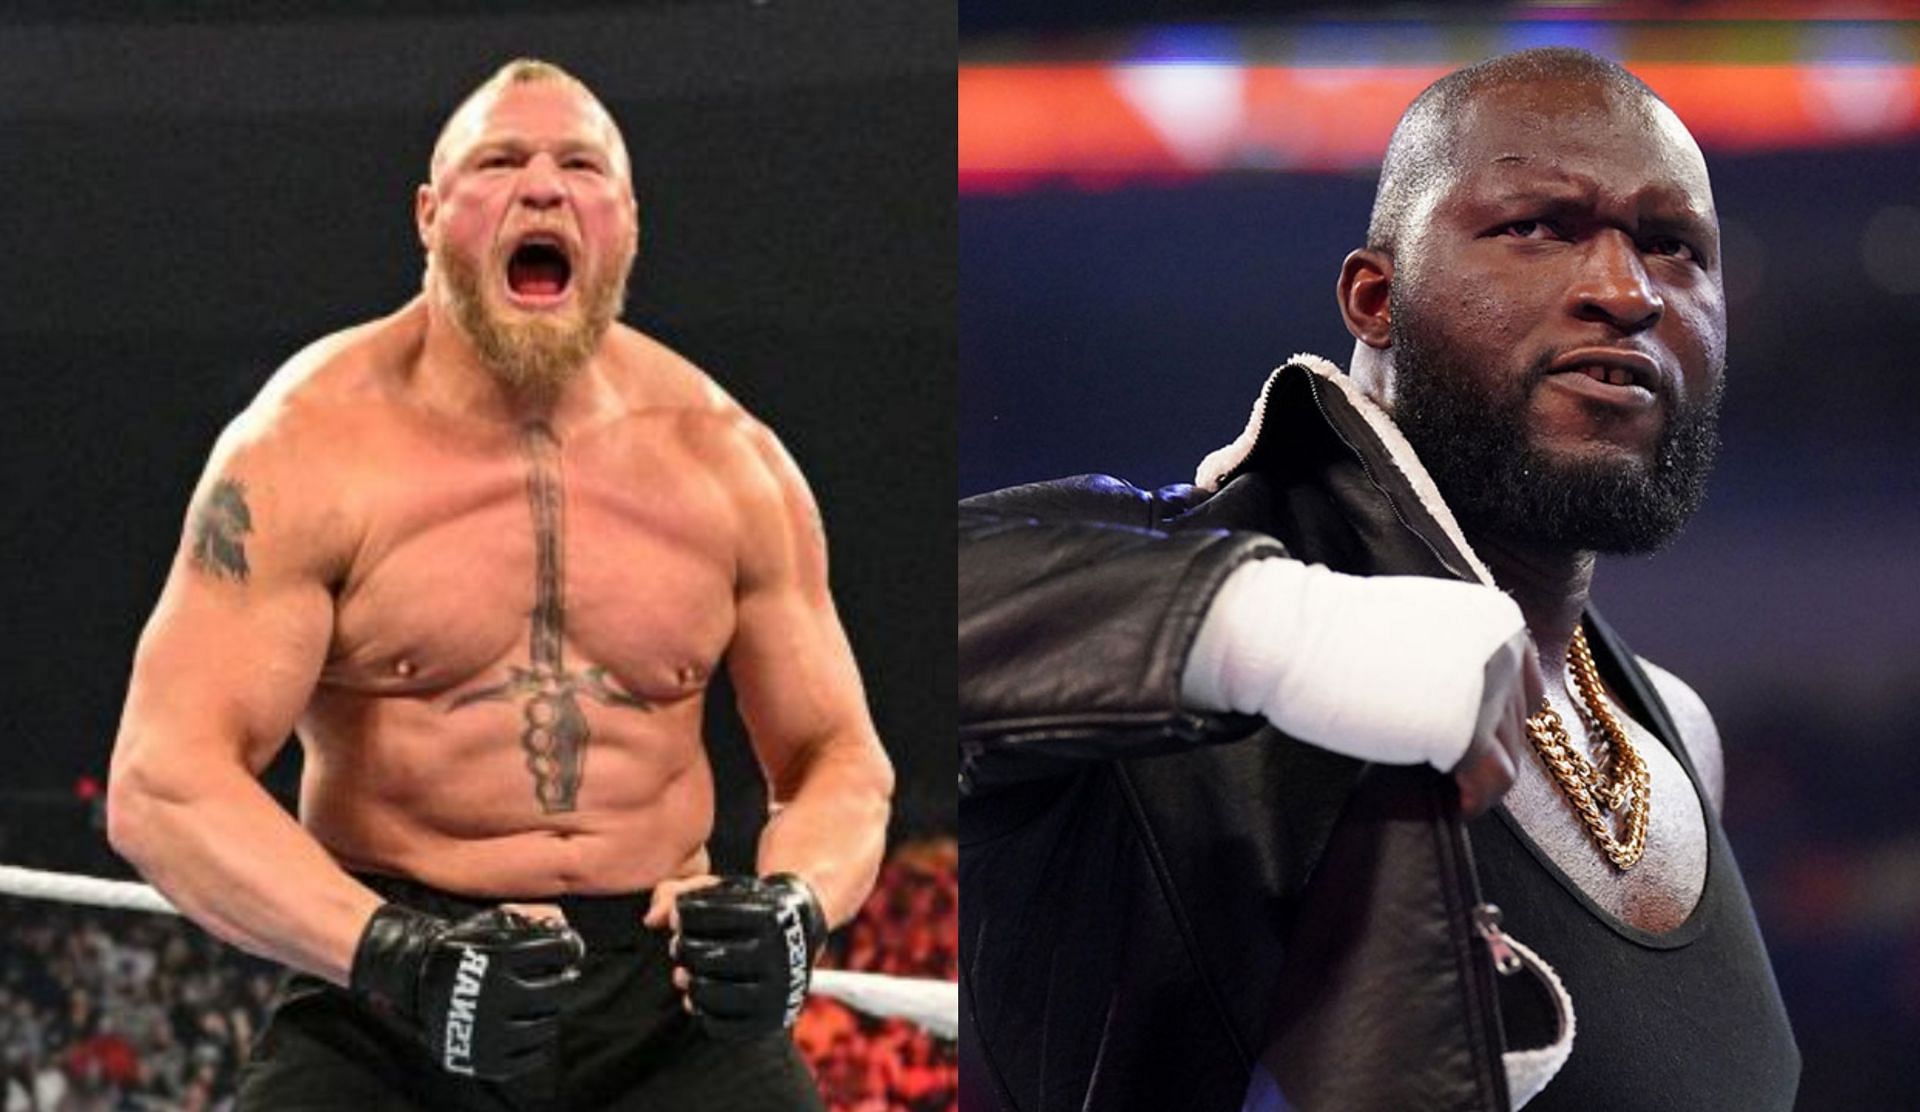 WWE Raw के एपिसोड को लेकर फैंस की प्रतिक्रियाएं गुस्से वाली रही 